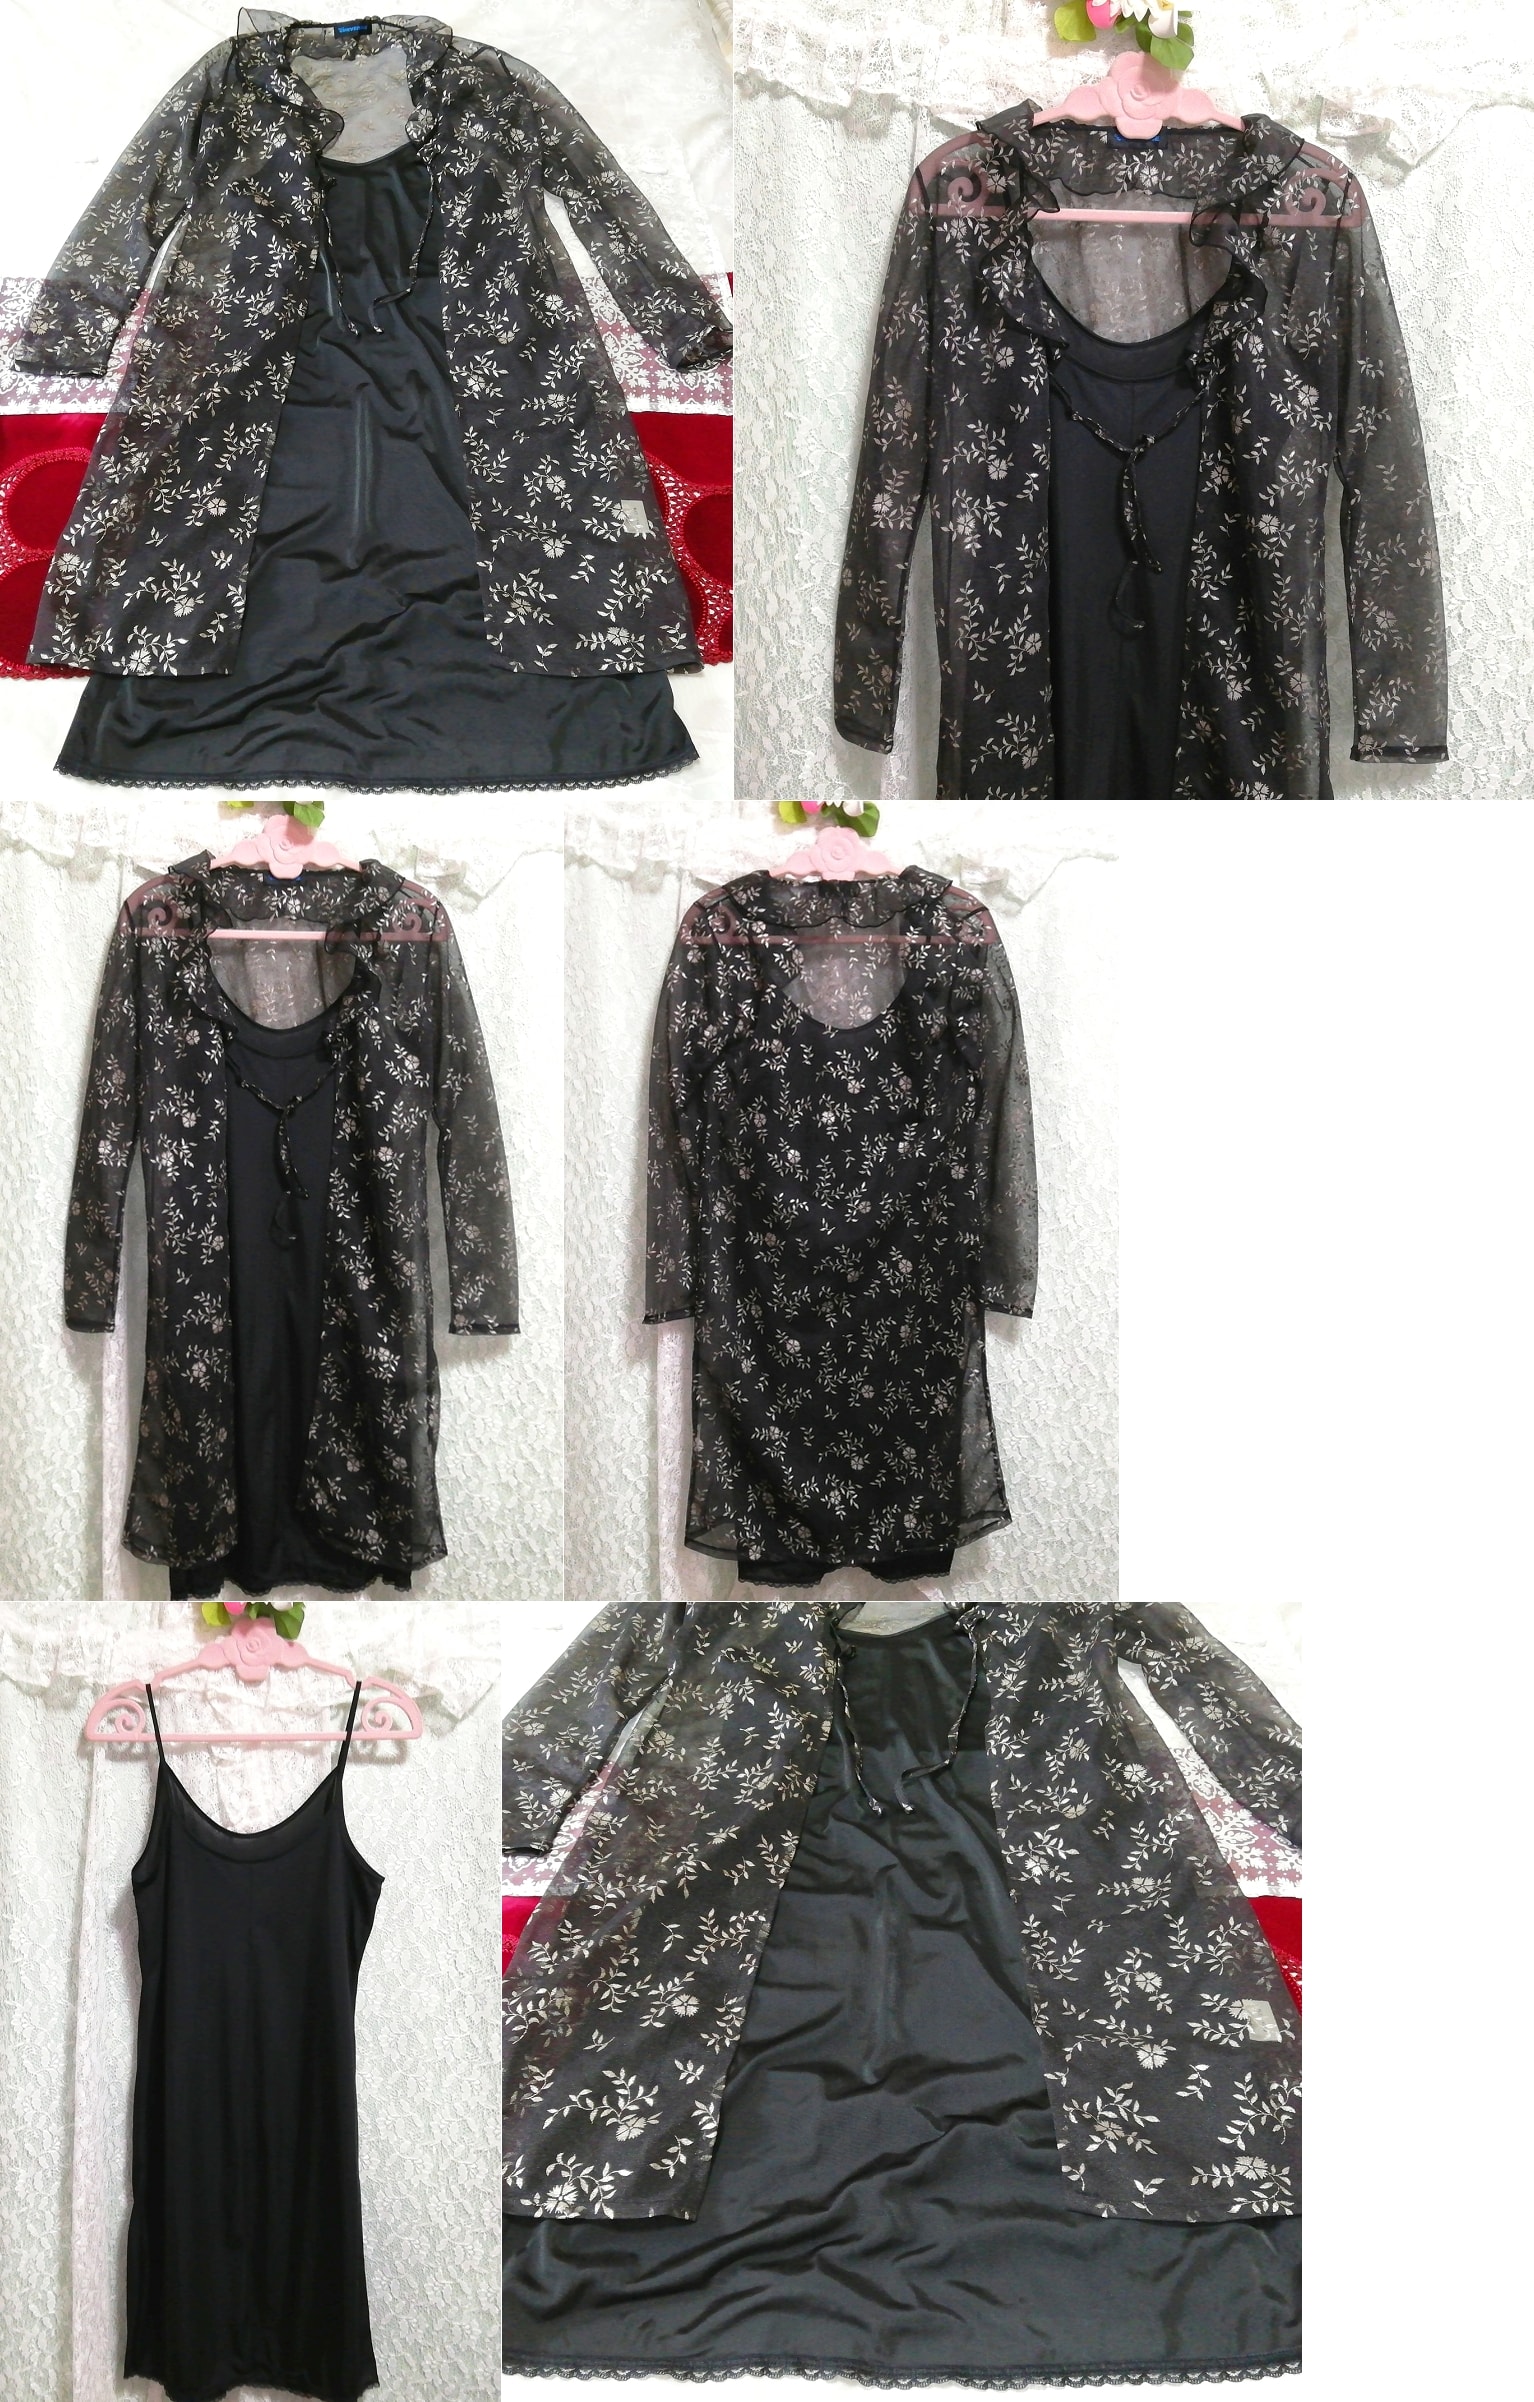 블랙 시스루 겉옷 가운 네글리제 나이트가운 나이트 웨어 캐미솔 베이비돌 드레스 2P, 패션, 숙녀 패션, 잠옷, 잠옷